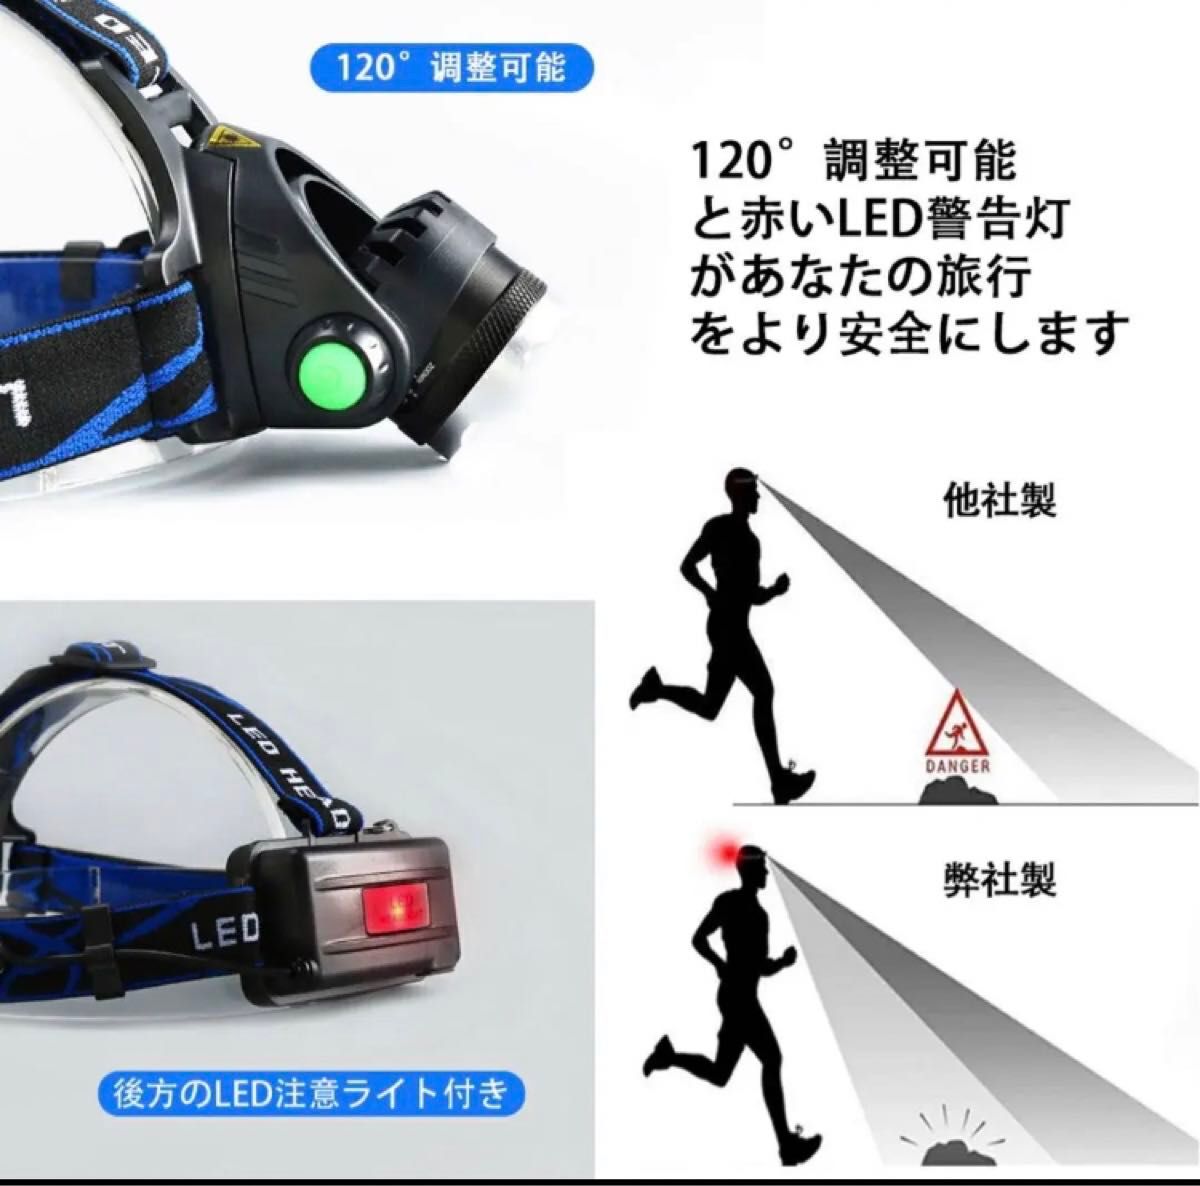 LEDヘッドライト 充電式 高輝度 ヘッドランプ 人感センサー 防水 防災 ヘルメット ライト IPX6防水  MR/2